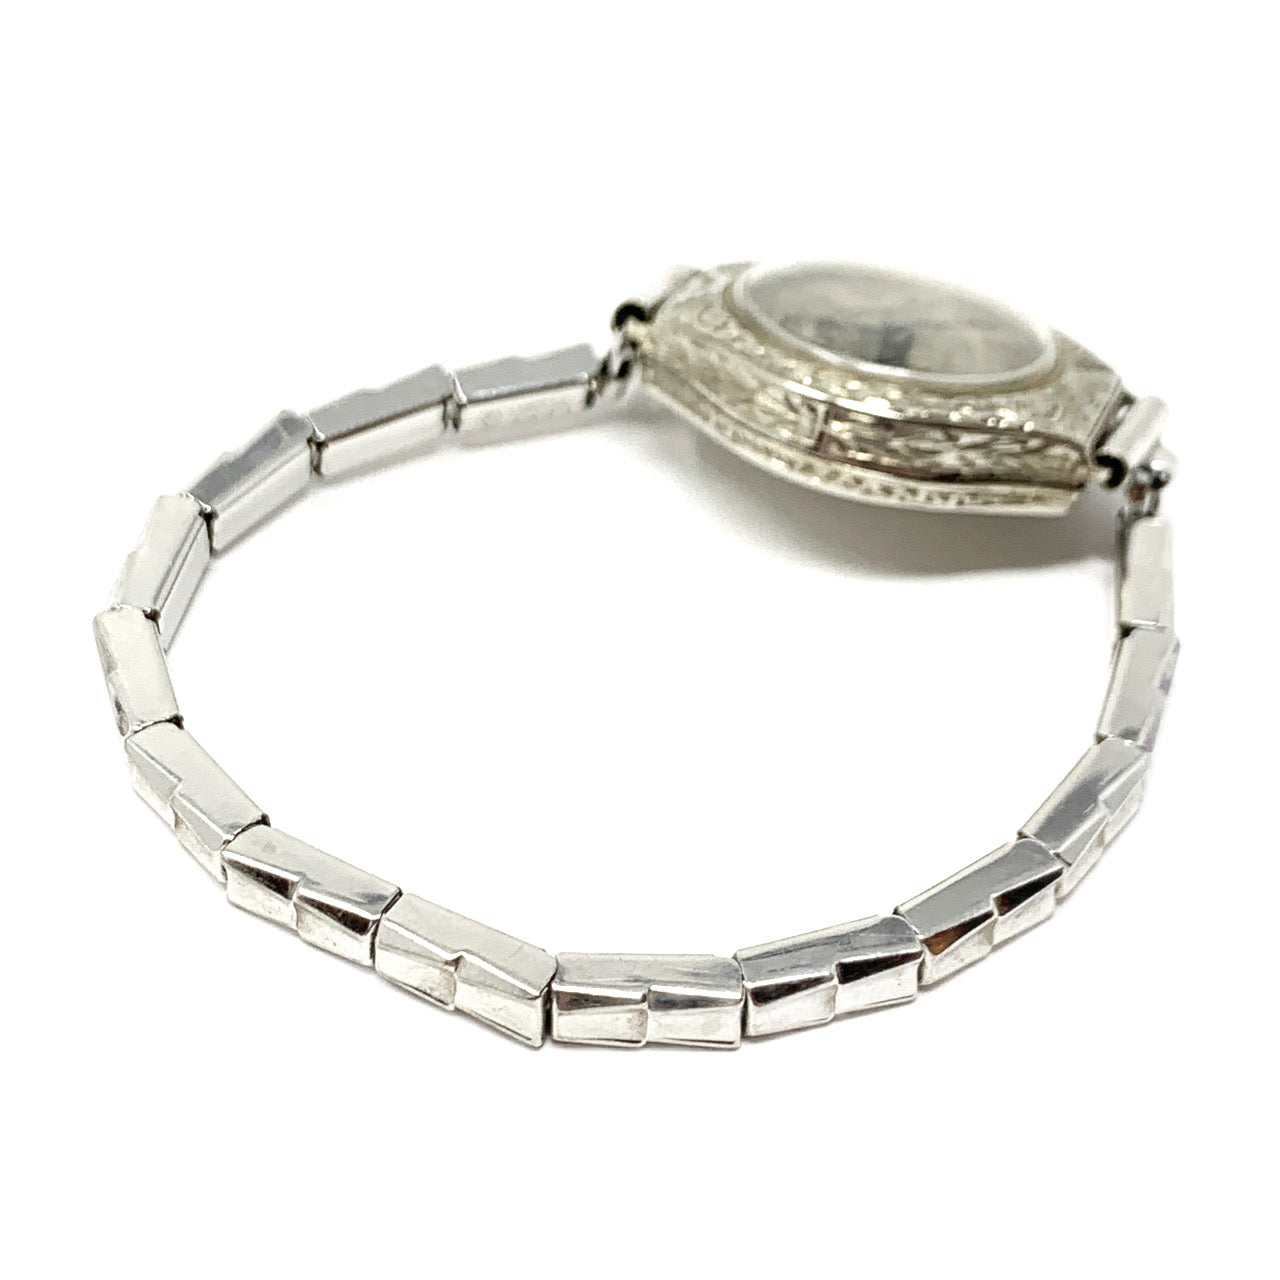 Benrus Men's Vintage Gold Tone Quartz Wristwatch Water Resistant BNW702 for  sale online | eBay